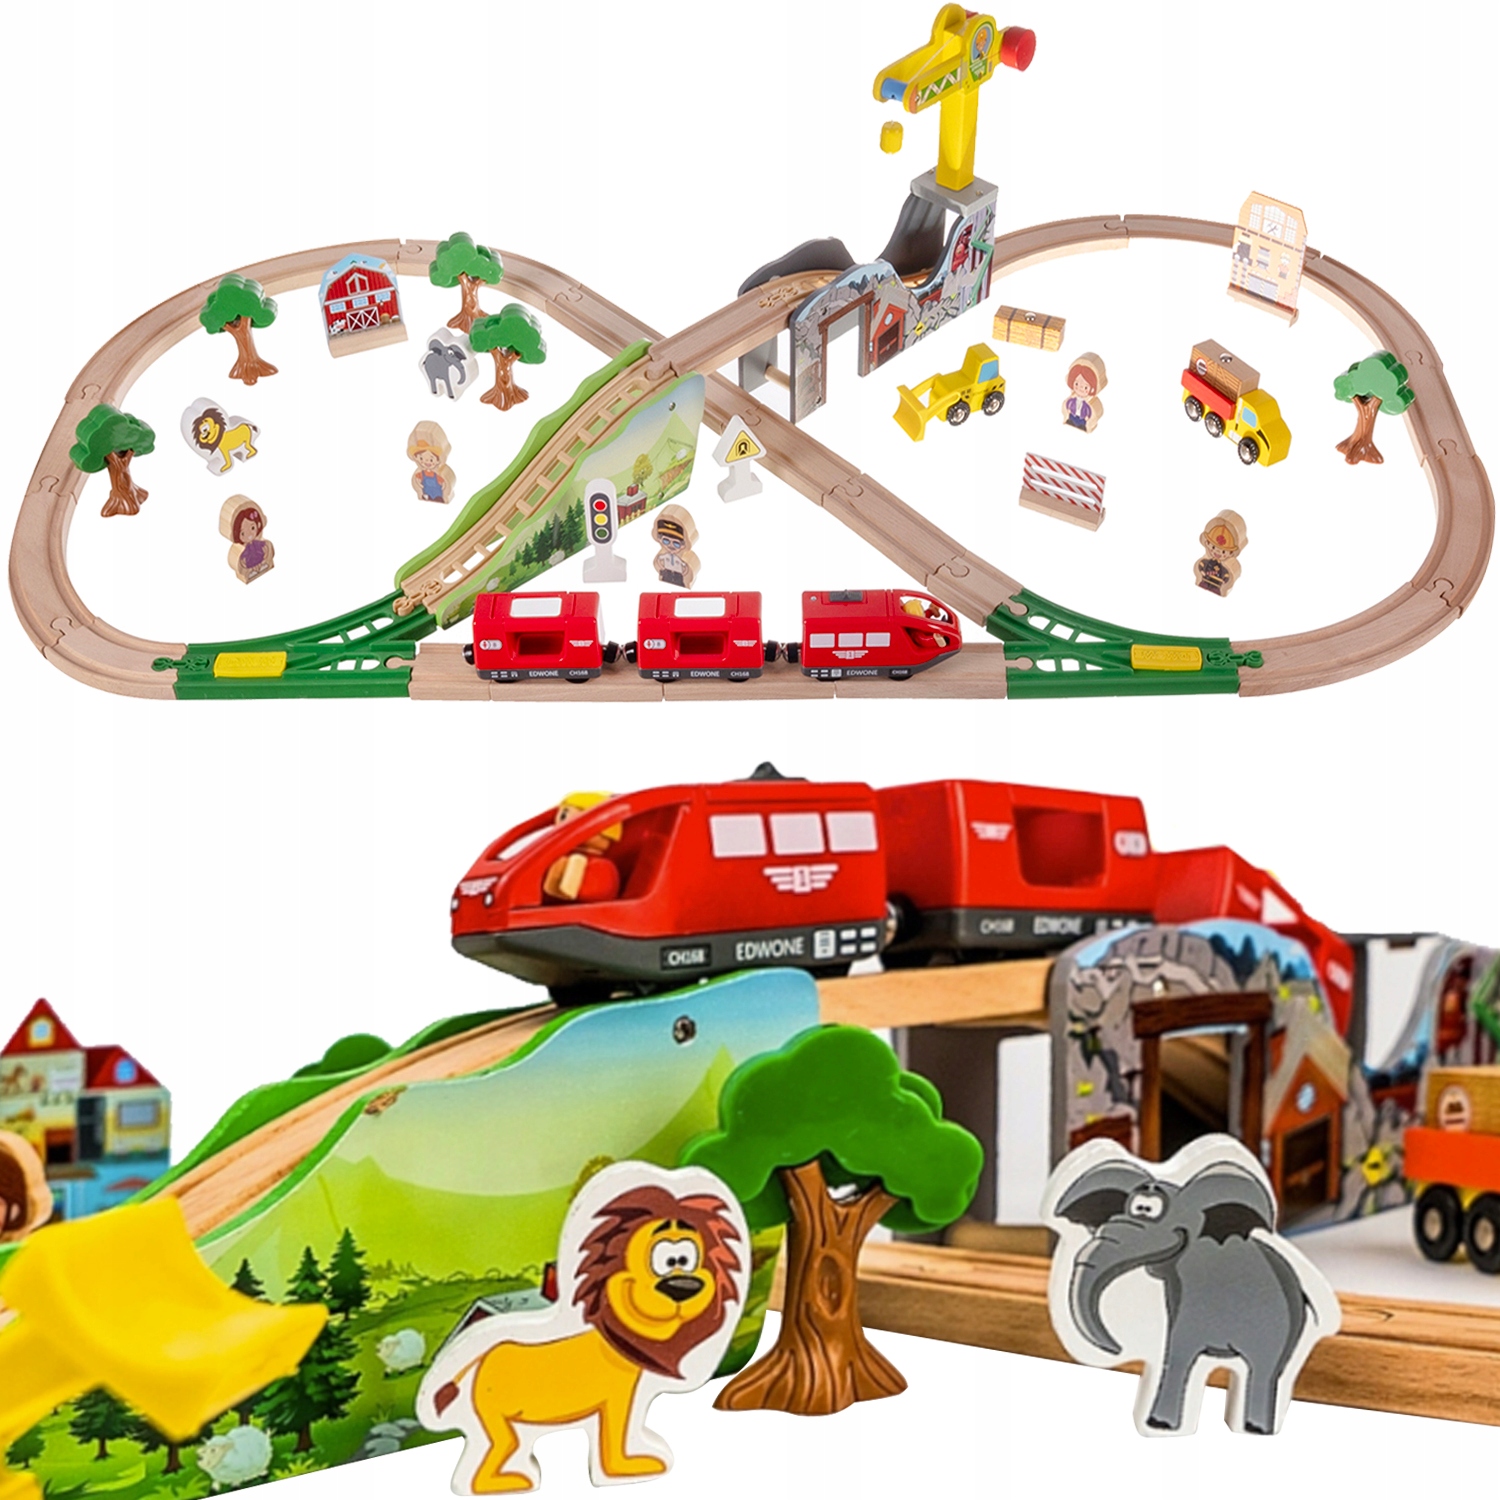 Дерев'яна залізнична колія Величезні залізничні колії 3,2 м на батарейках для дитячих вагонів